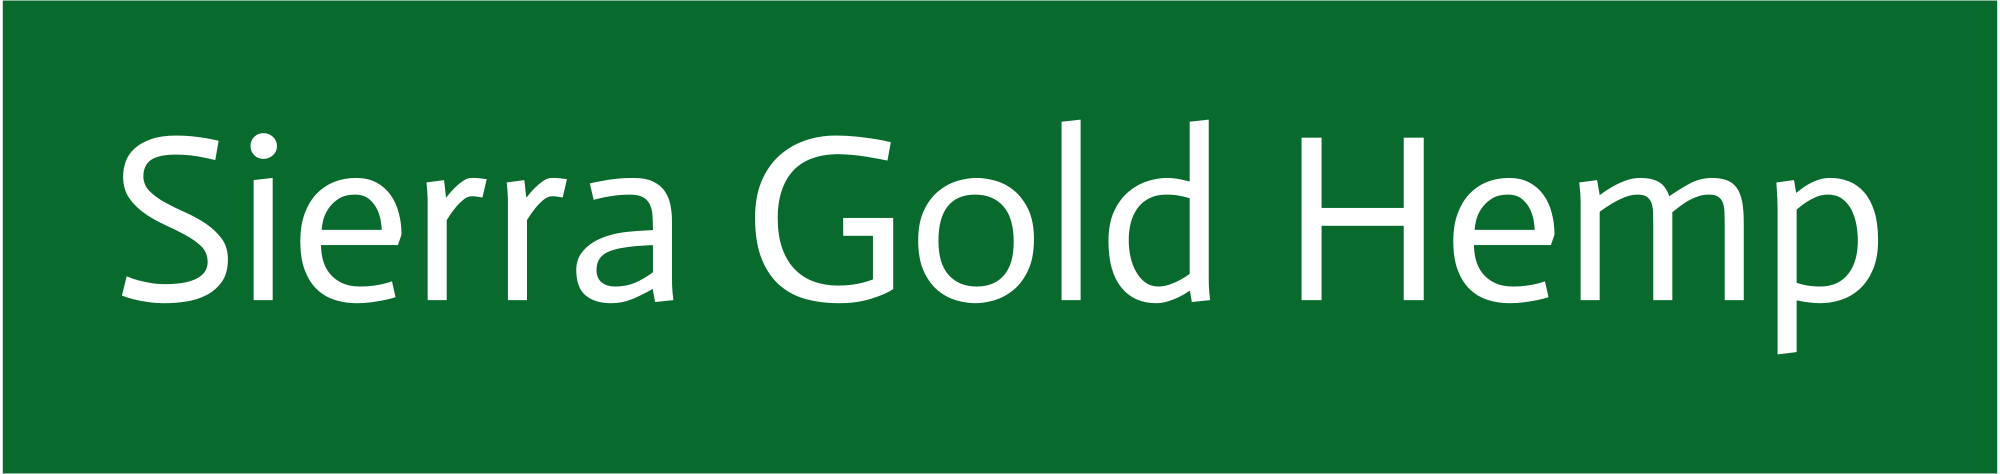 sierra-gold-hemp-high-resolution-logo-transparent